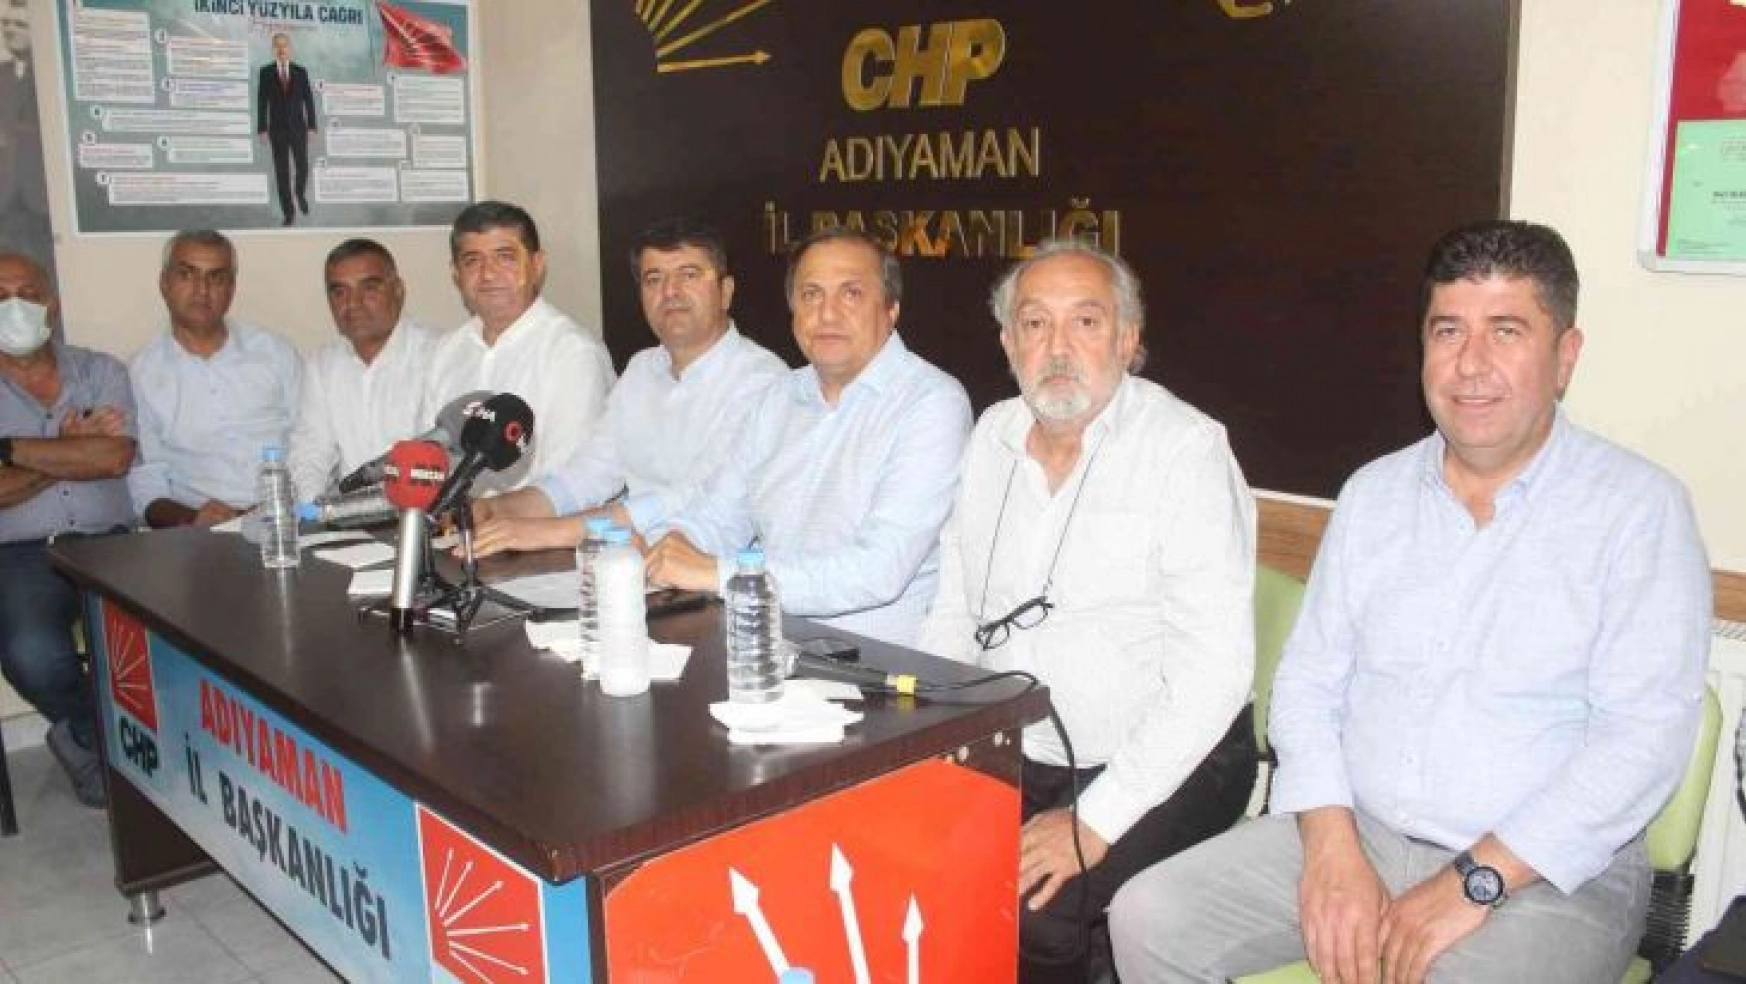 CHP Genel Başkan Yardımcısı Torun, Adıyaman'ın sorunlarını dile getirdi